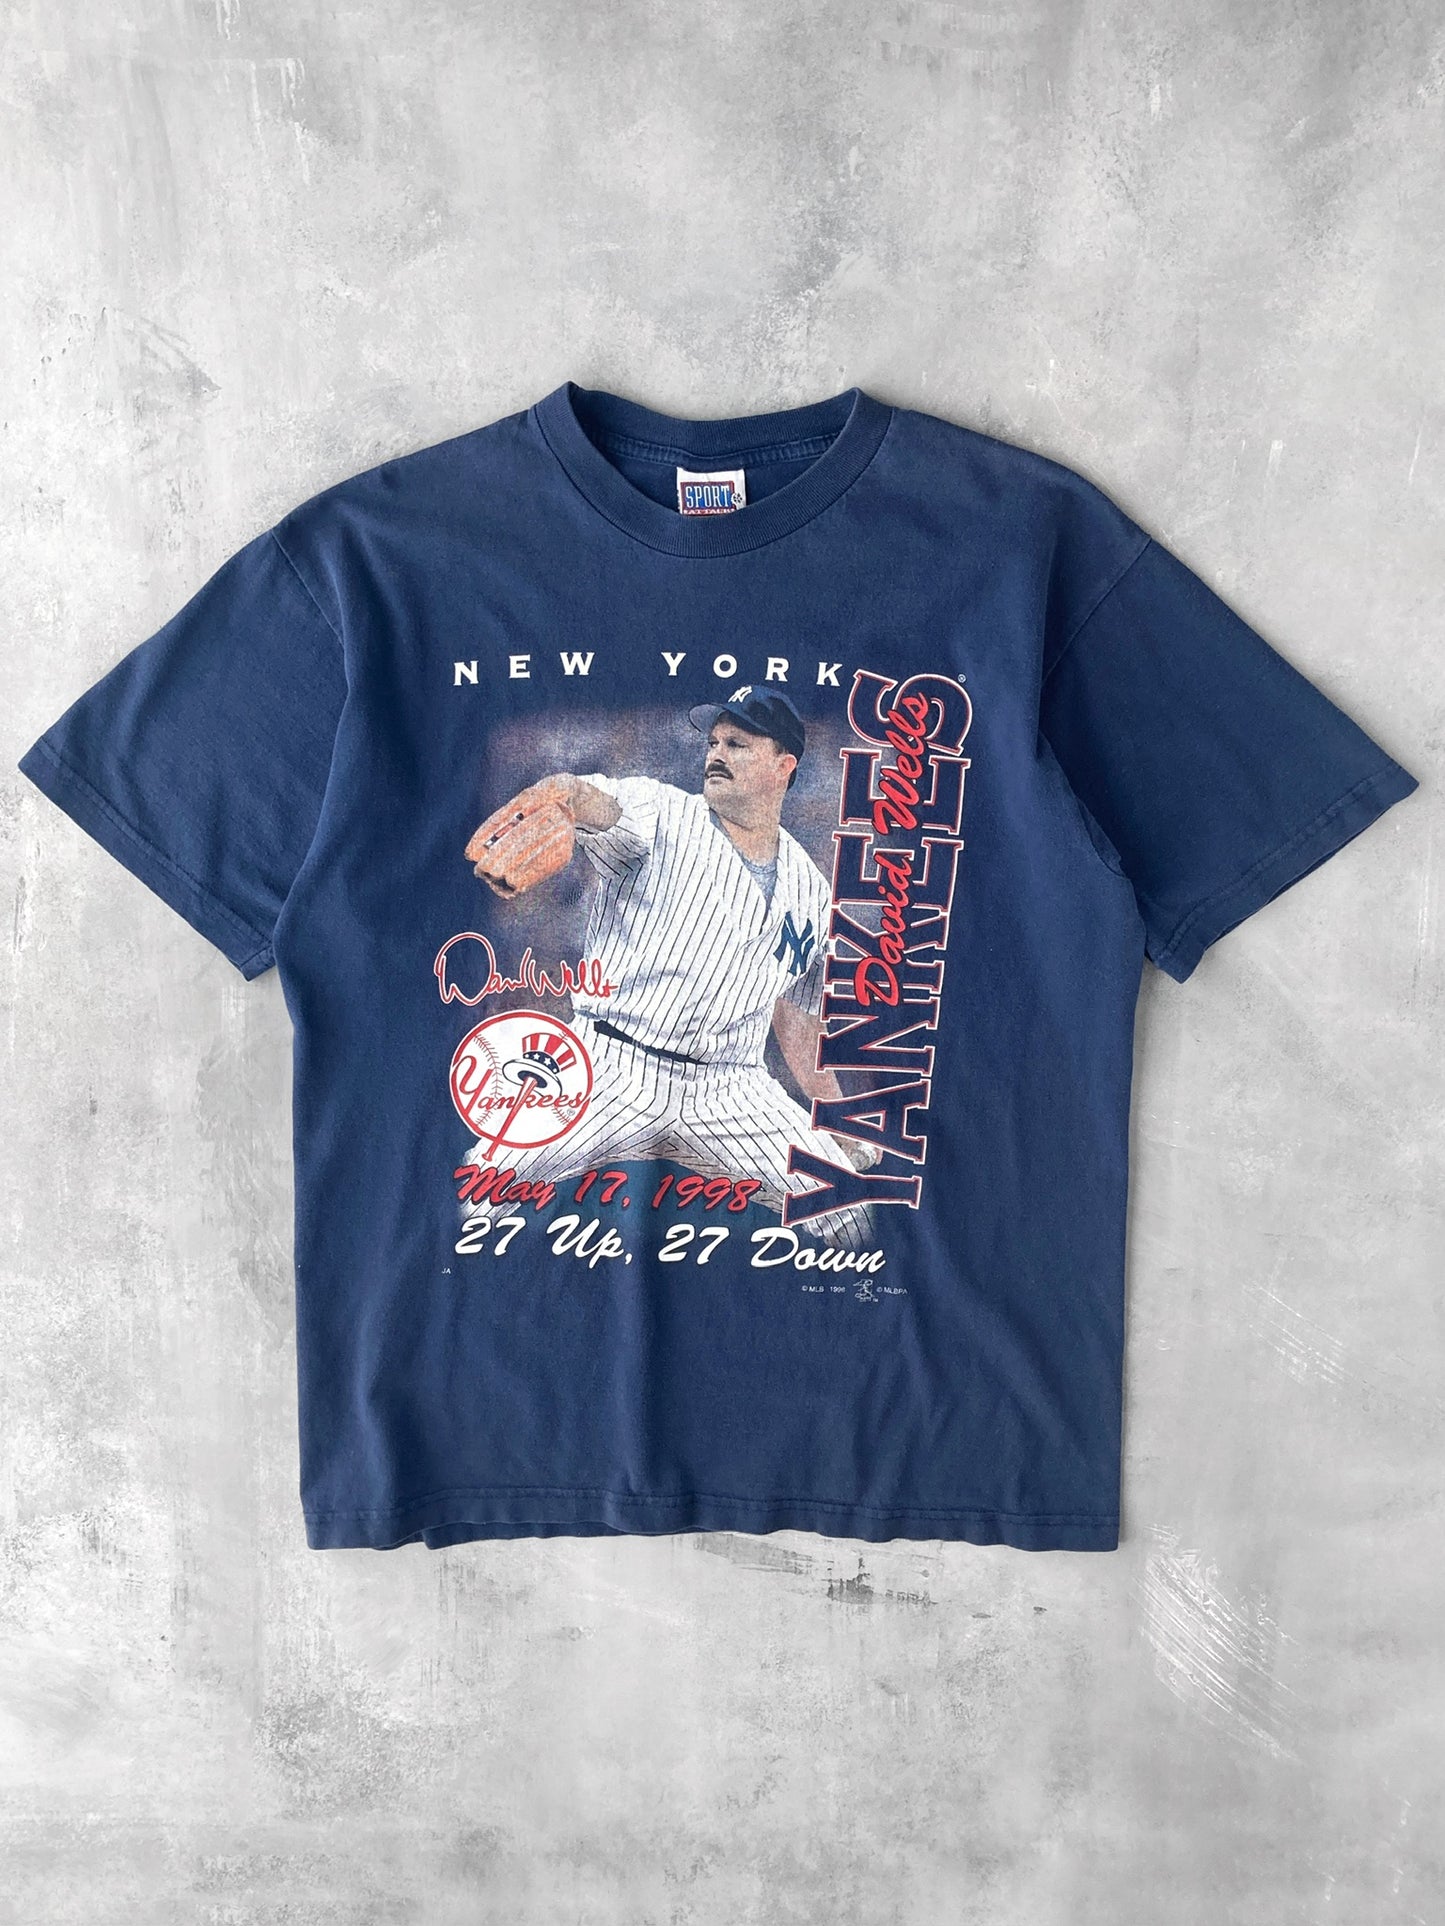 David Wells NY Yankees T-Shirt '98 - Large